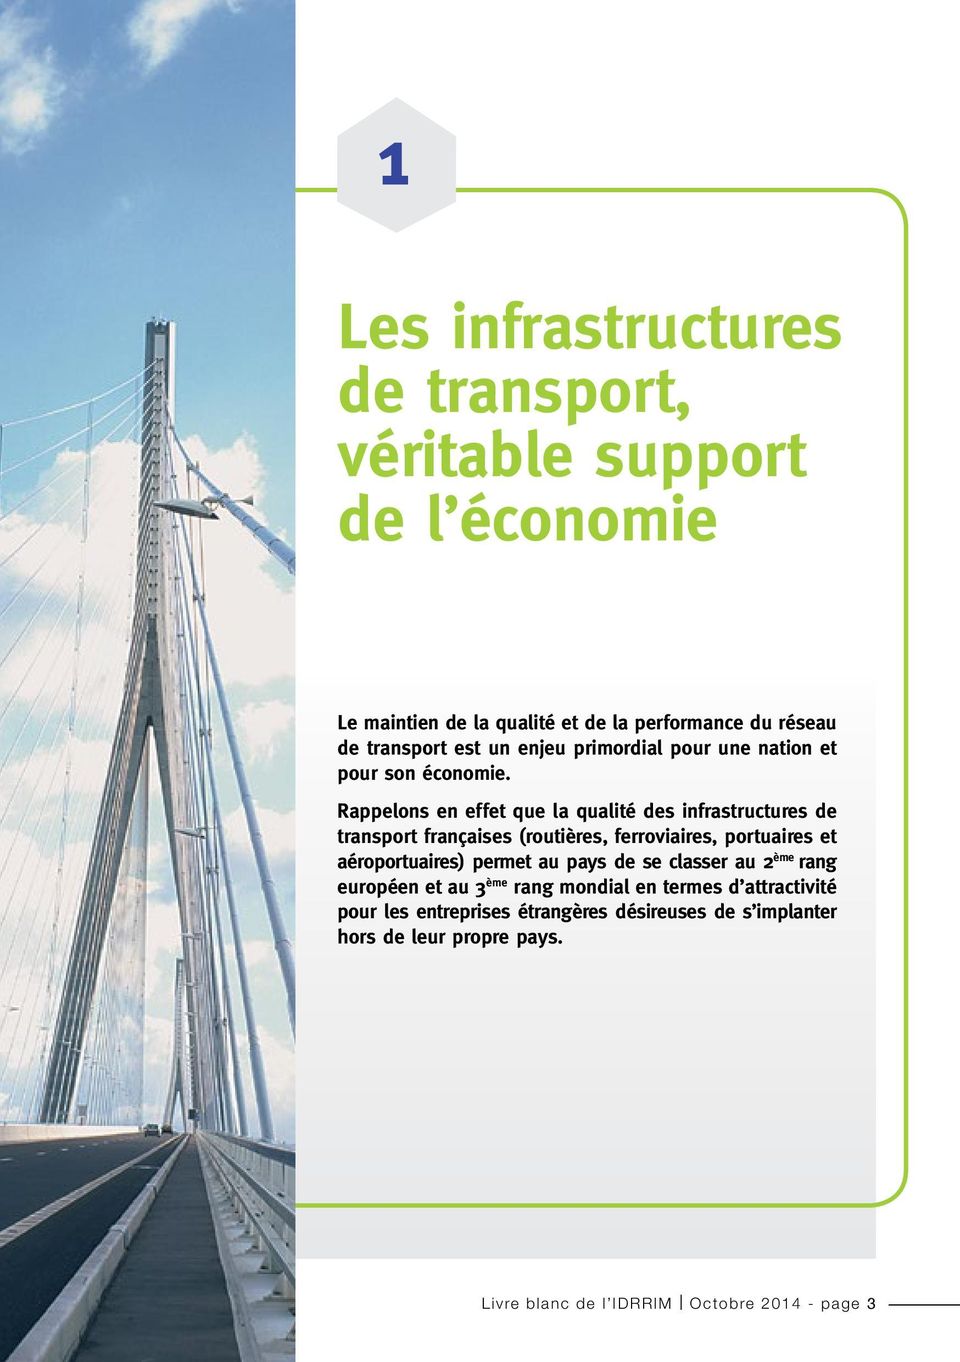 Rappelons en effet que la qualité des infrastructures de transport françaises (routières, ferroviaires, portuaires et aéroportuaires) permet